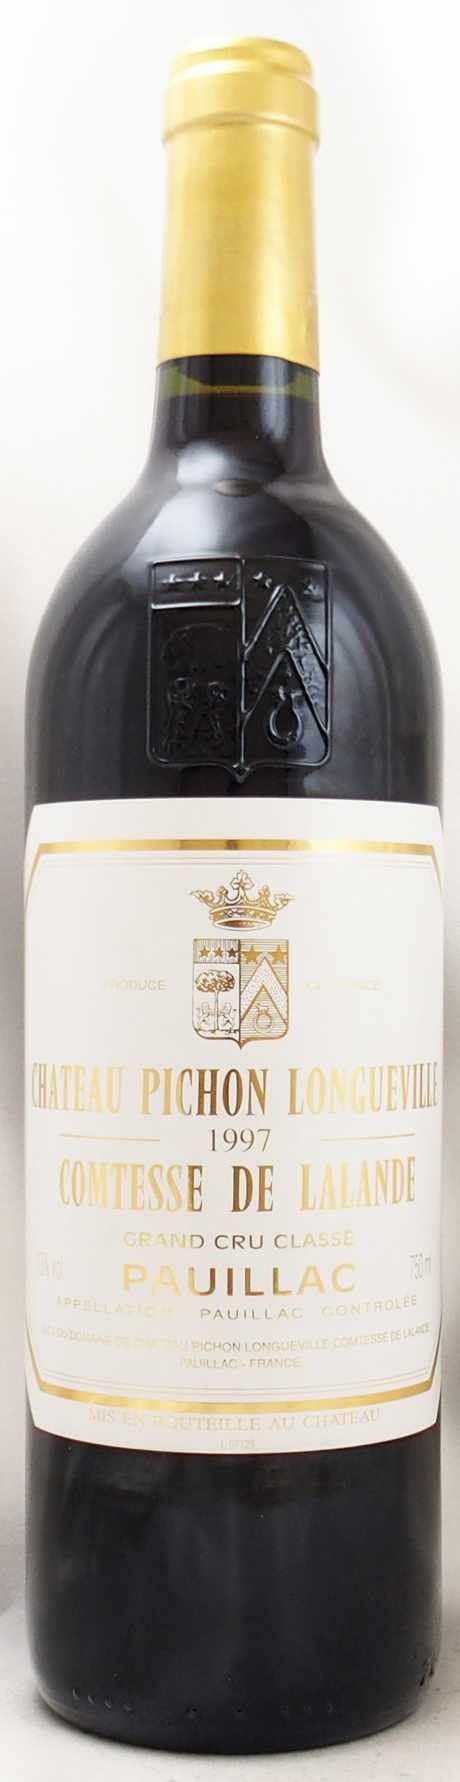 シャトー ピション ロングヴィル コンテス ド ラランド1997ワイン